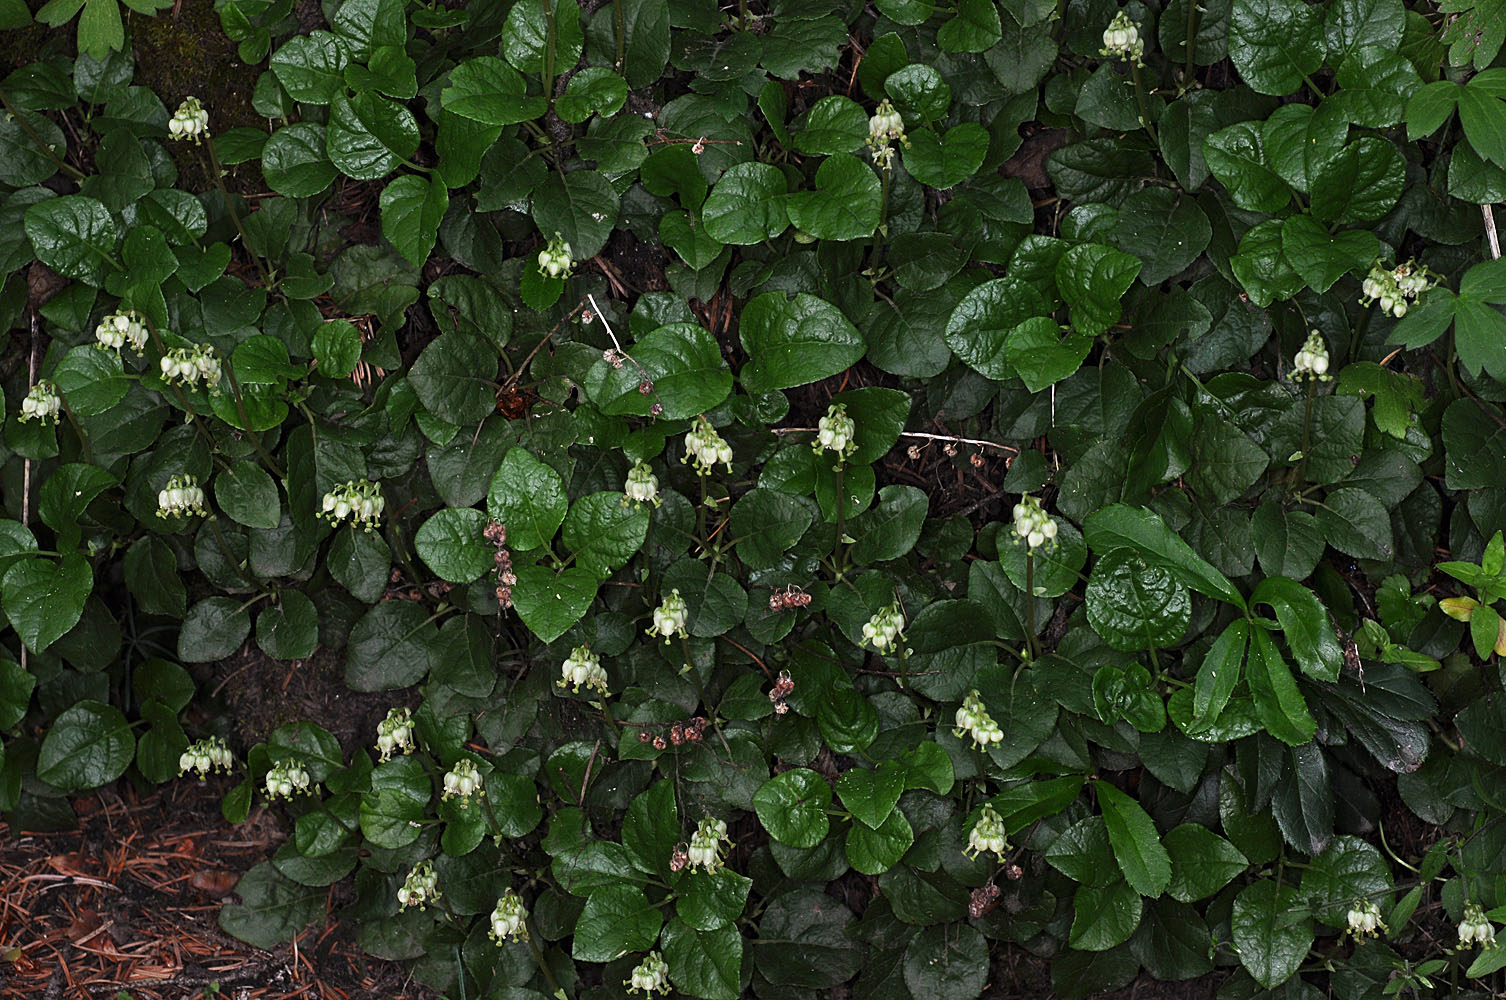 Flora of Eastern Washington Image: Orthilia secunda